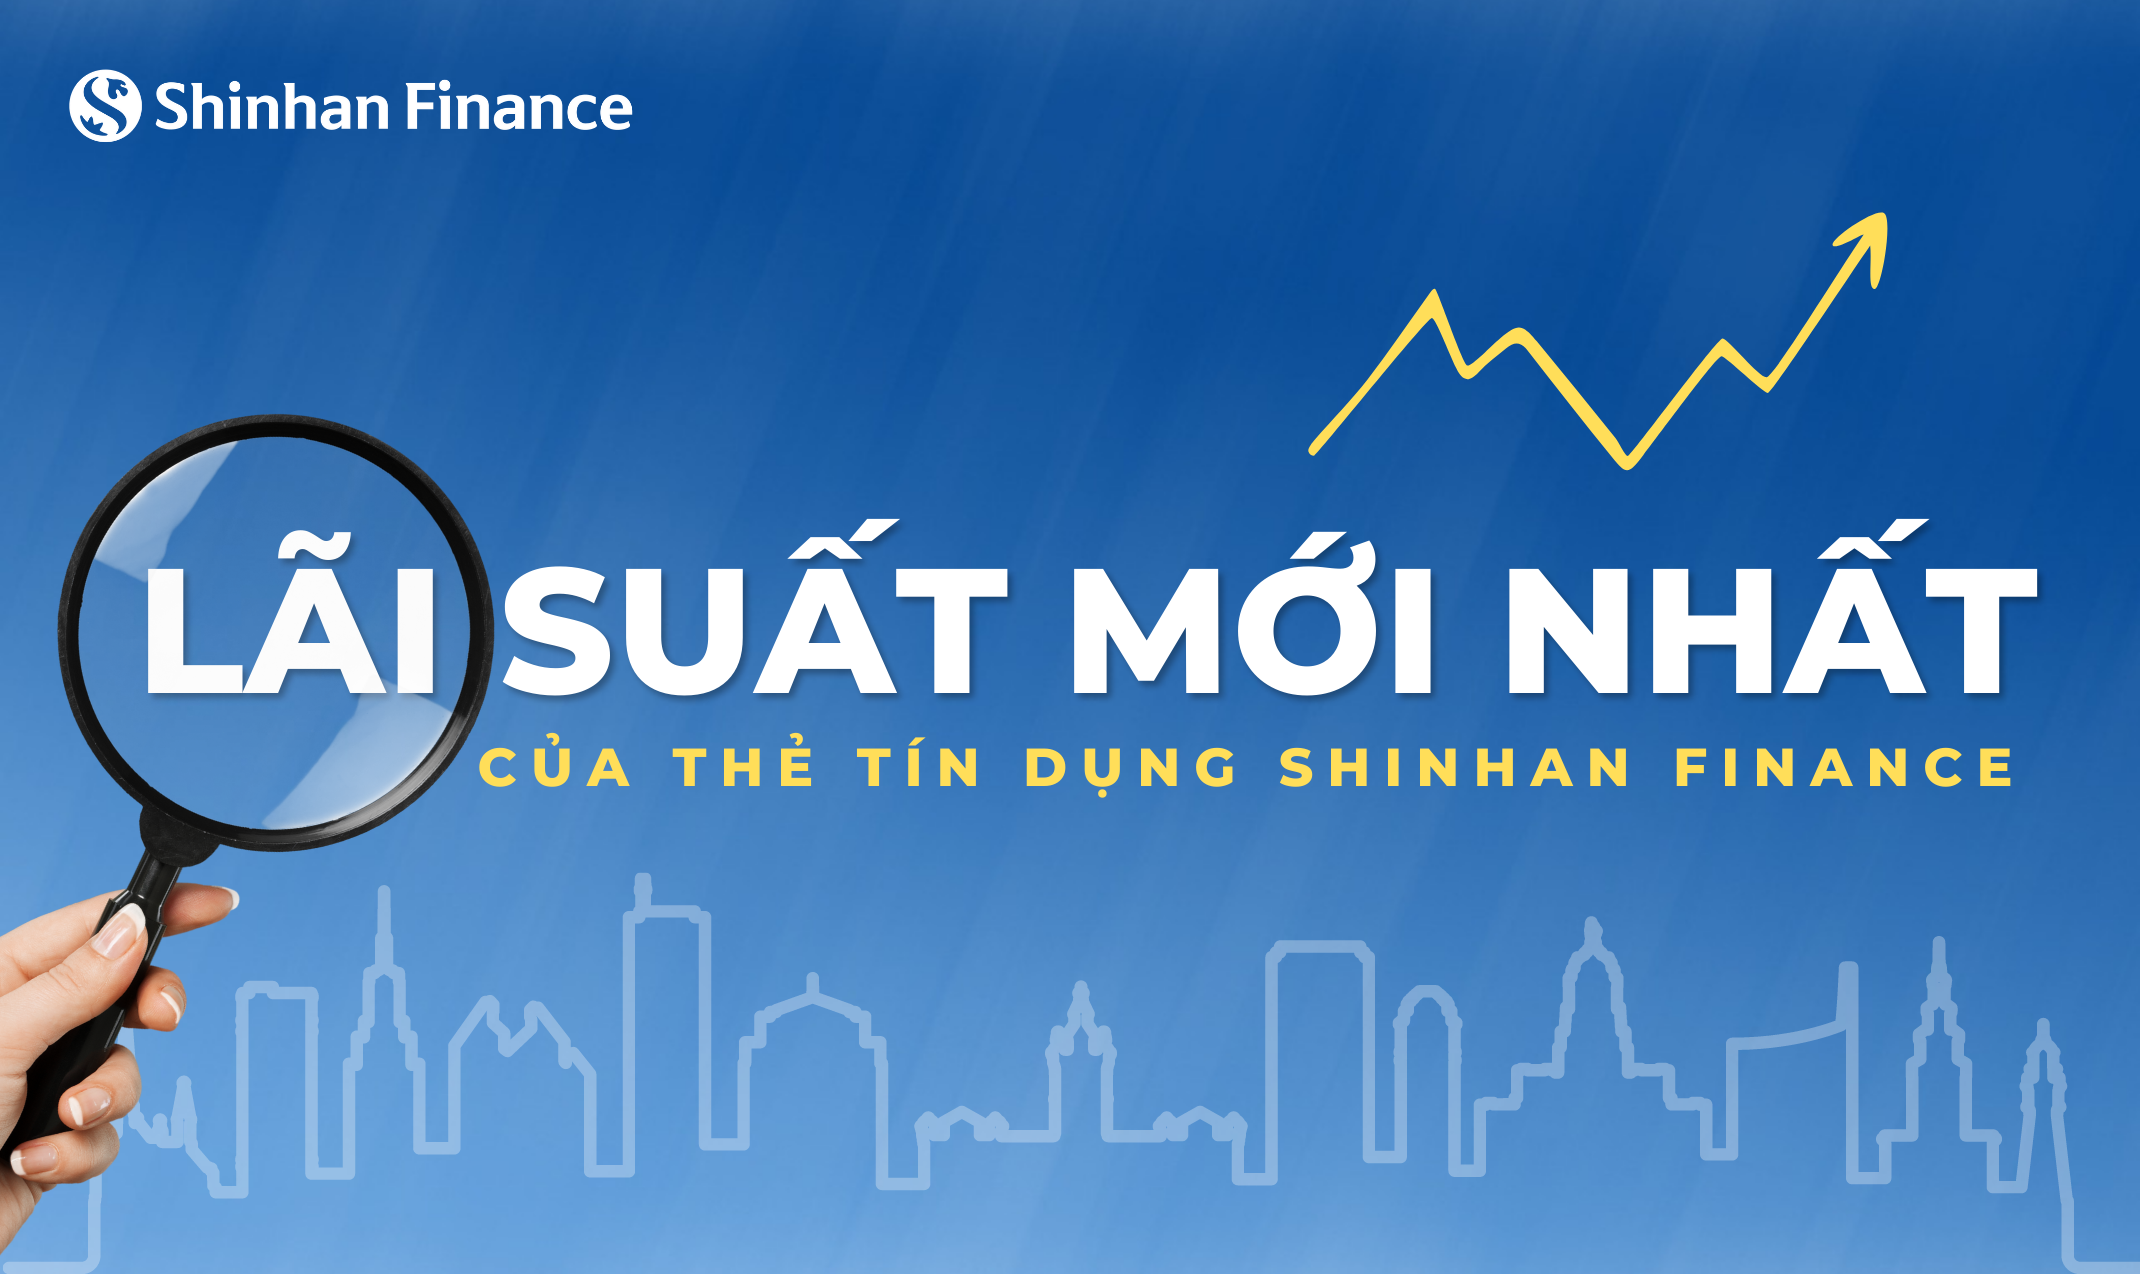 Thủ tục và quy trình tính lãi suất cho khoản vay từ Shinhan Finance?
